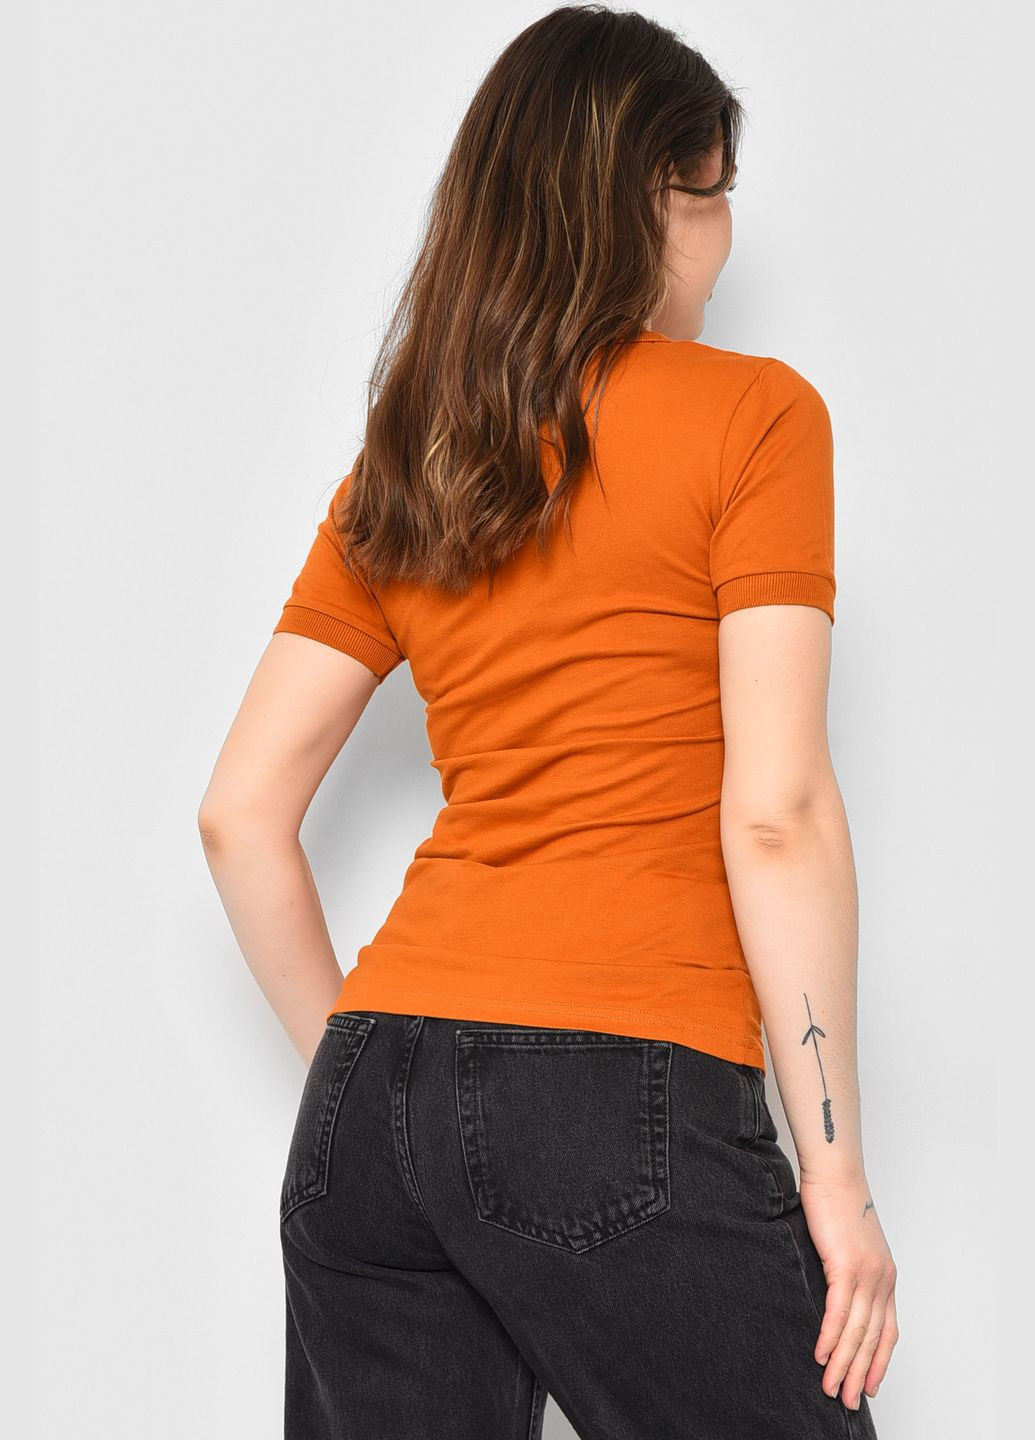 Оранжевая летняя футболка женская поло терракотового цвета Let's Shop